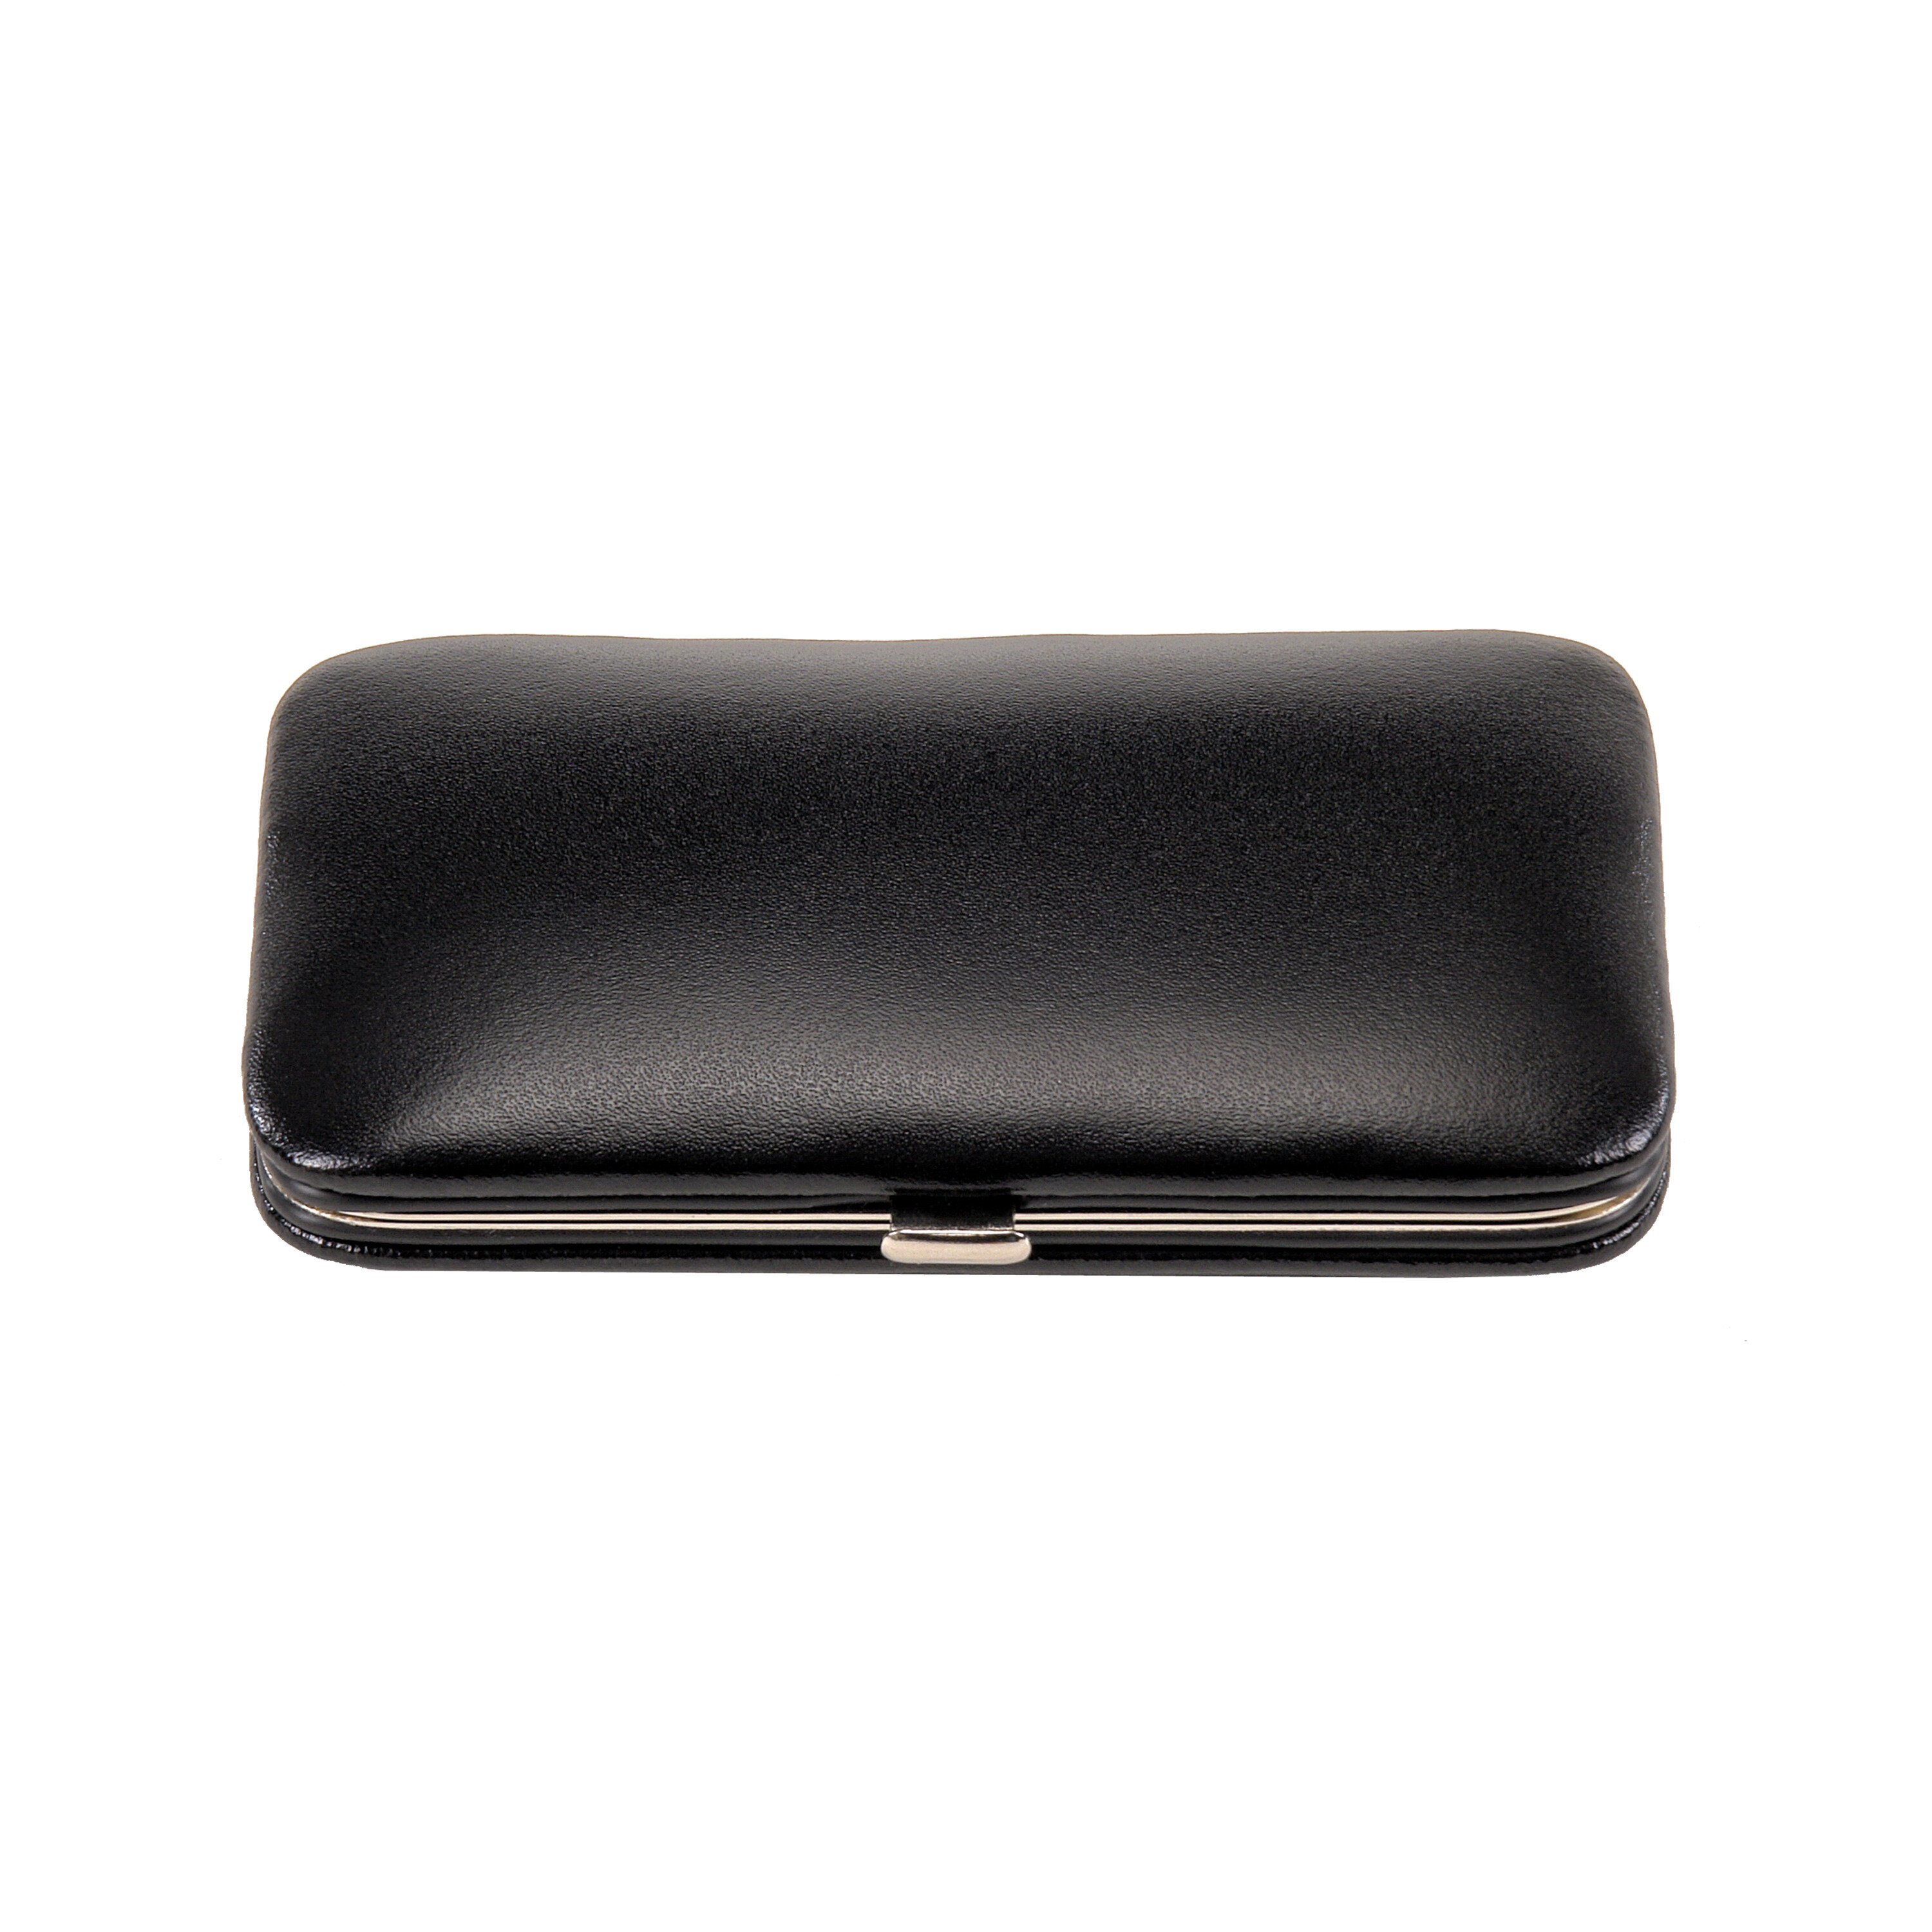 4-piece manicure case manicure set / black (leather) 